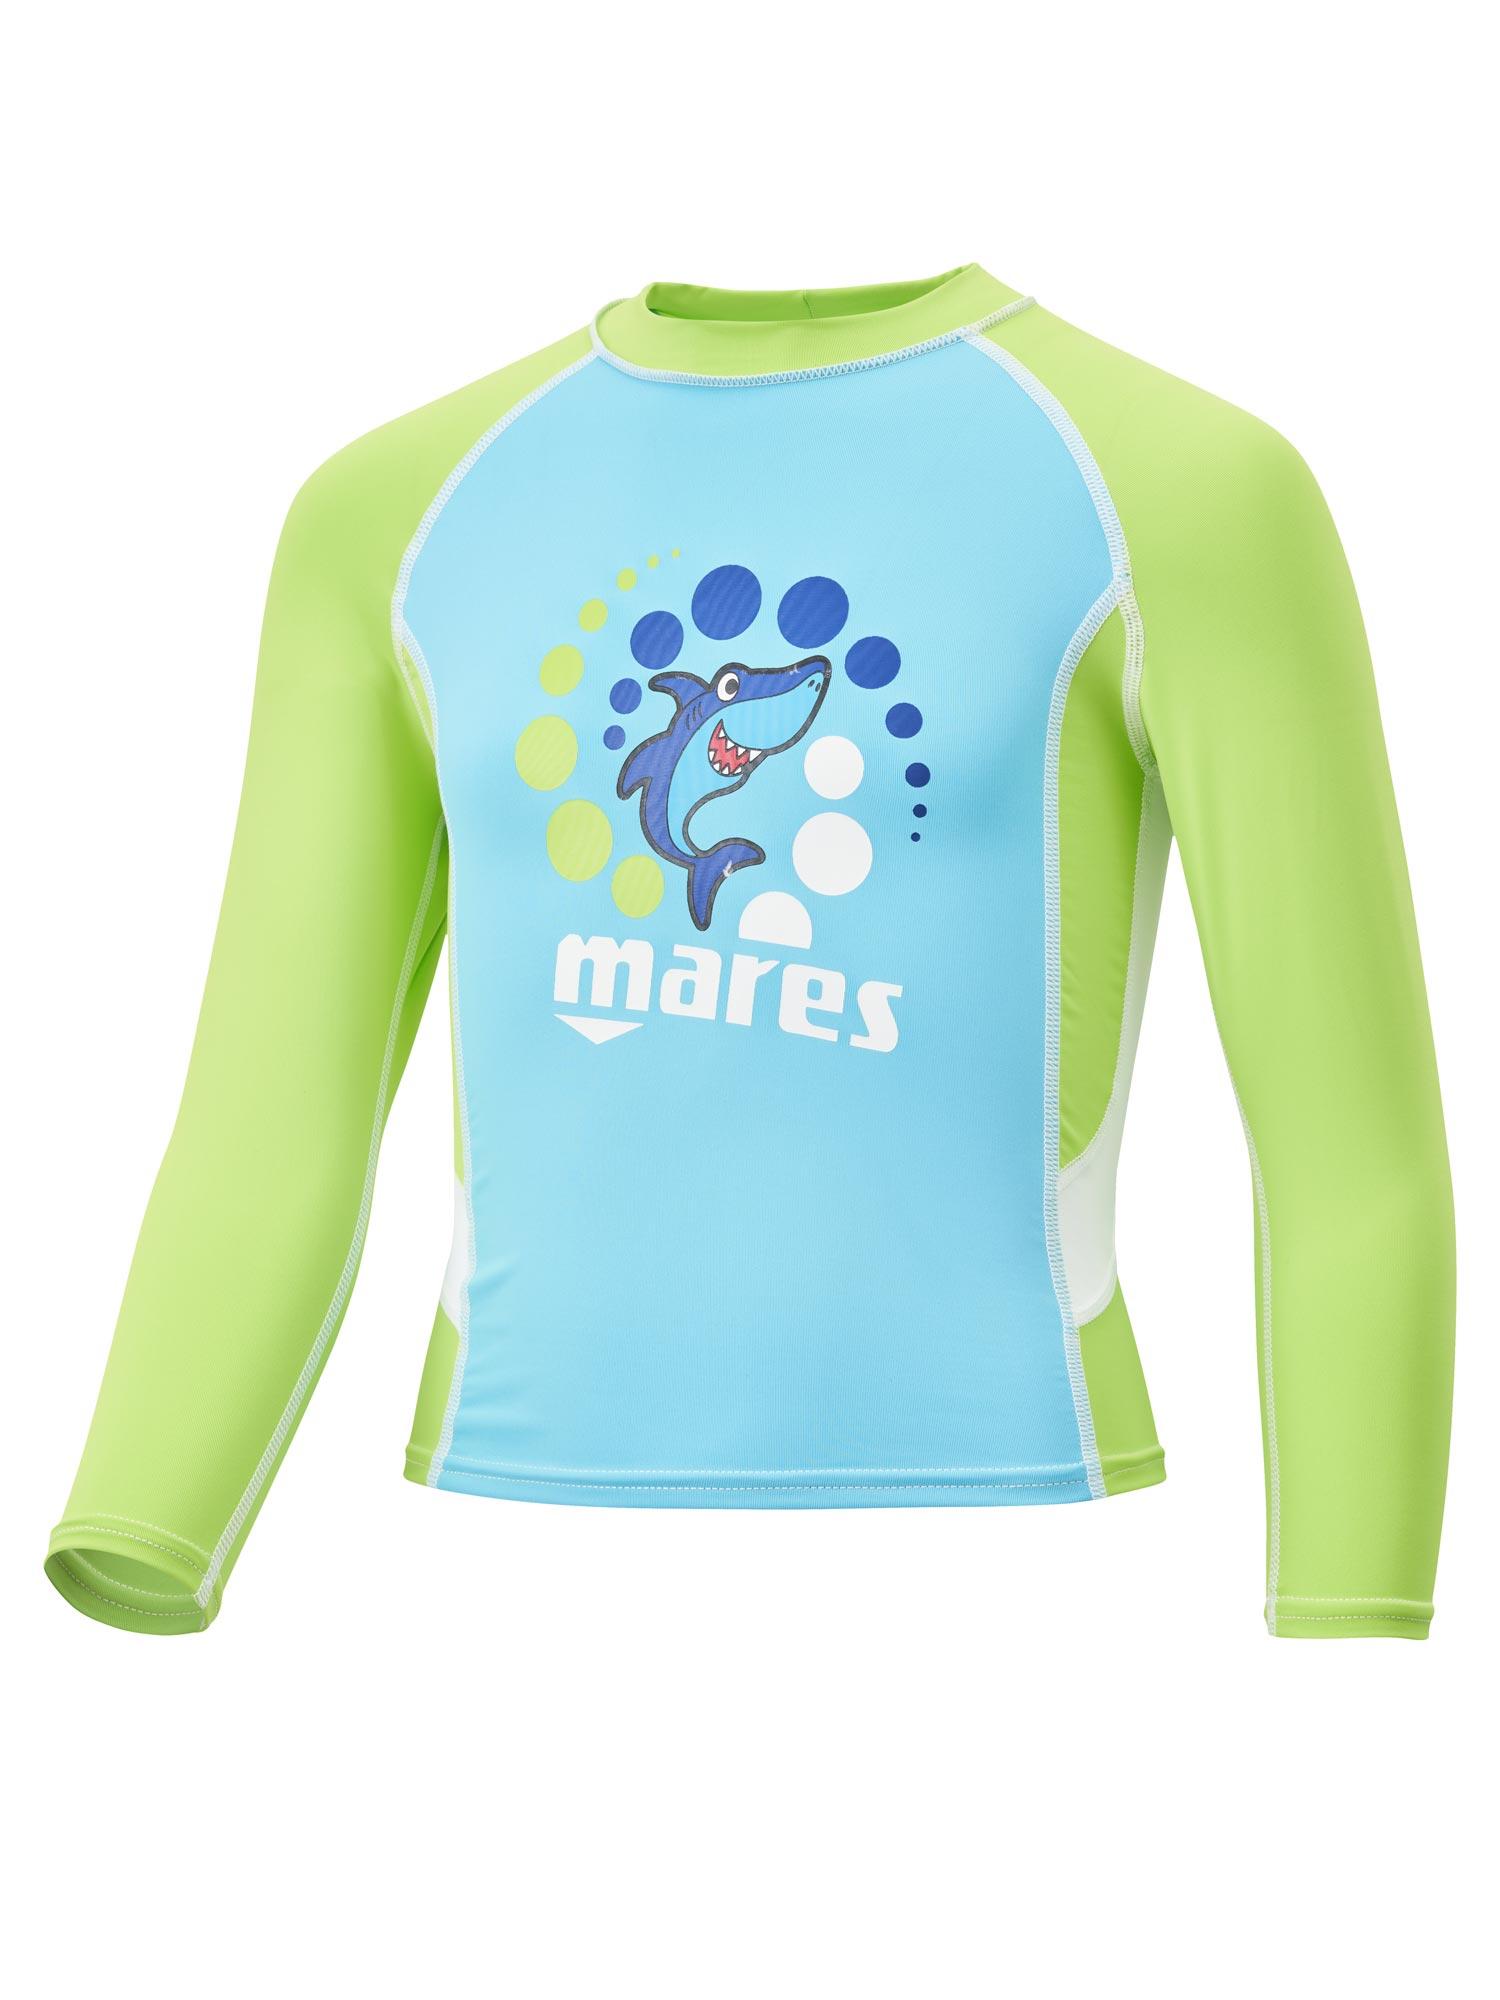 Selected image for MARES Majica za plivanje za dečake zeleno-plava